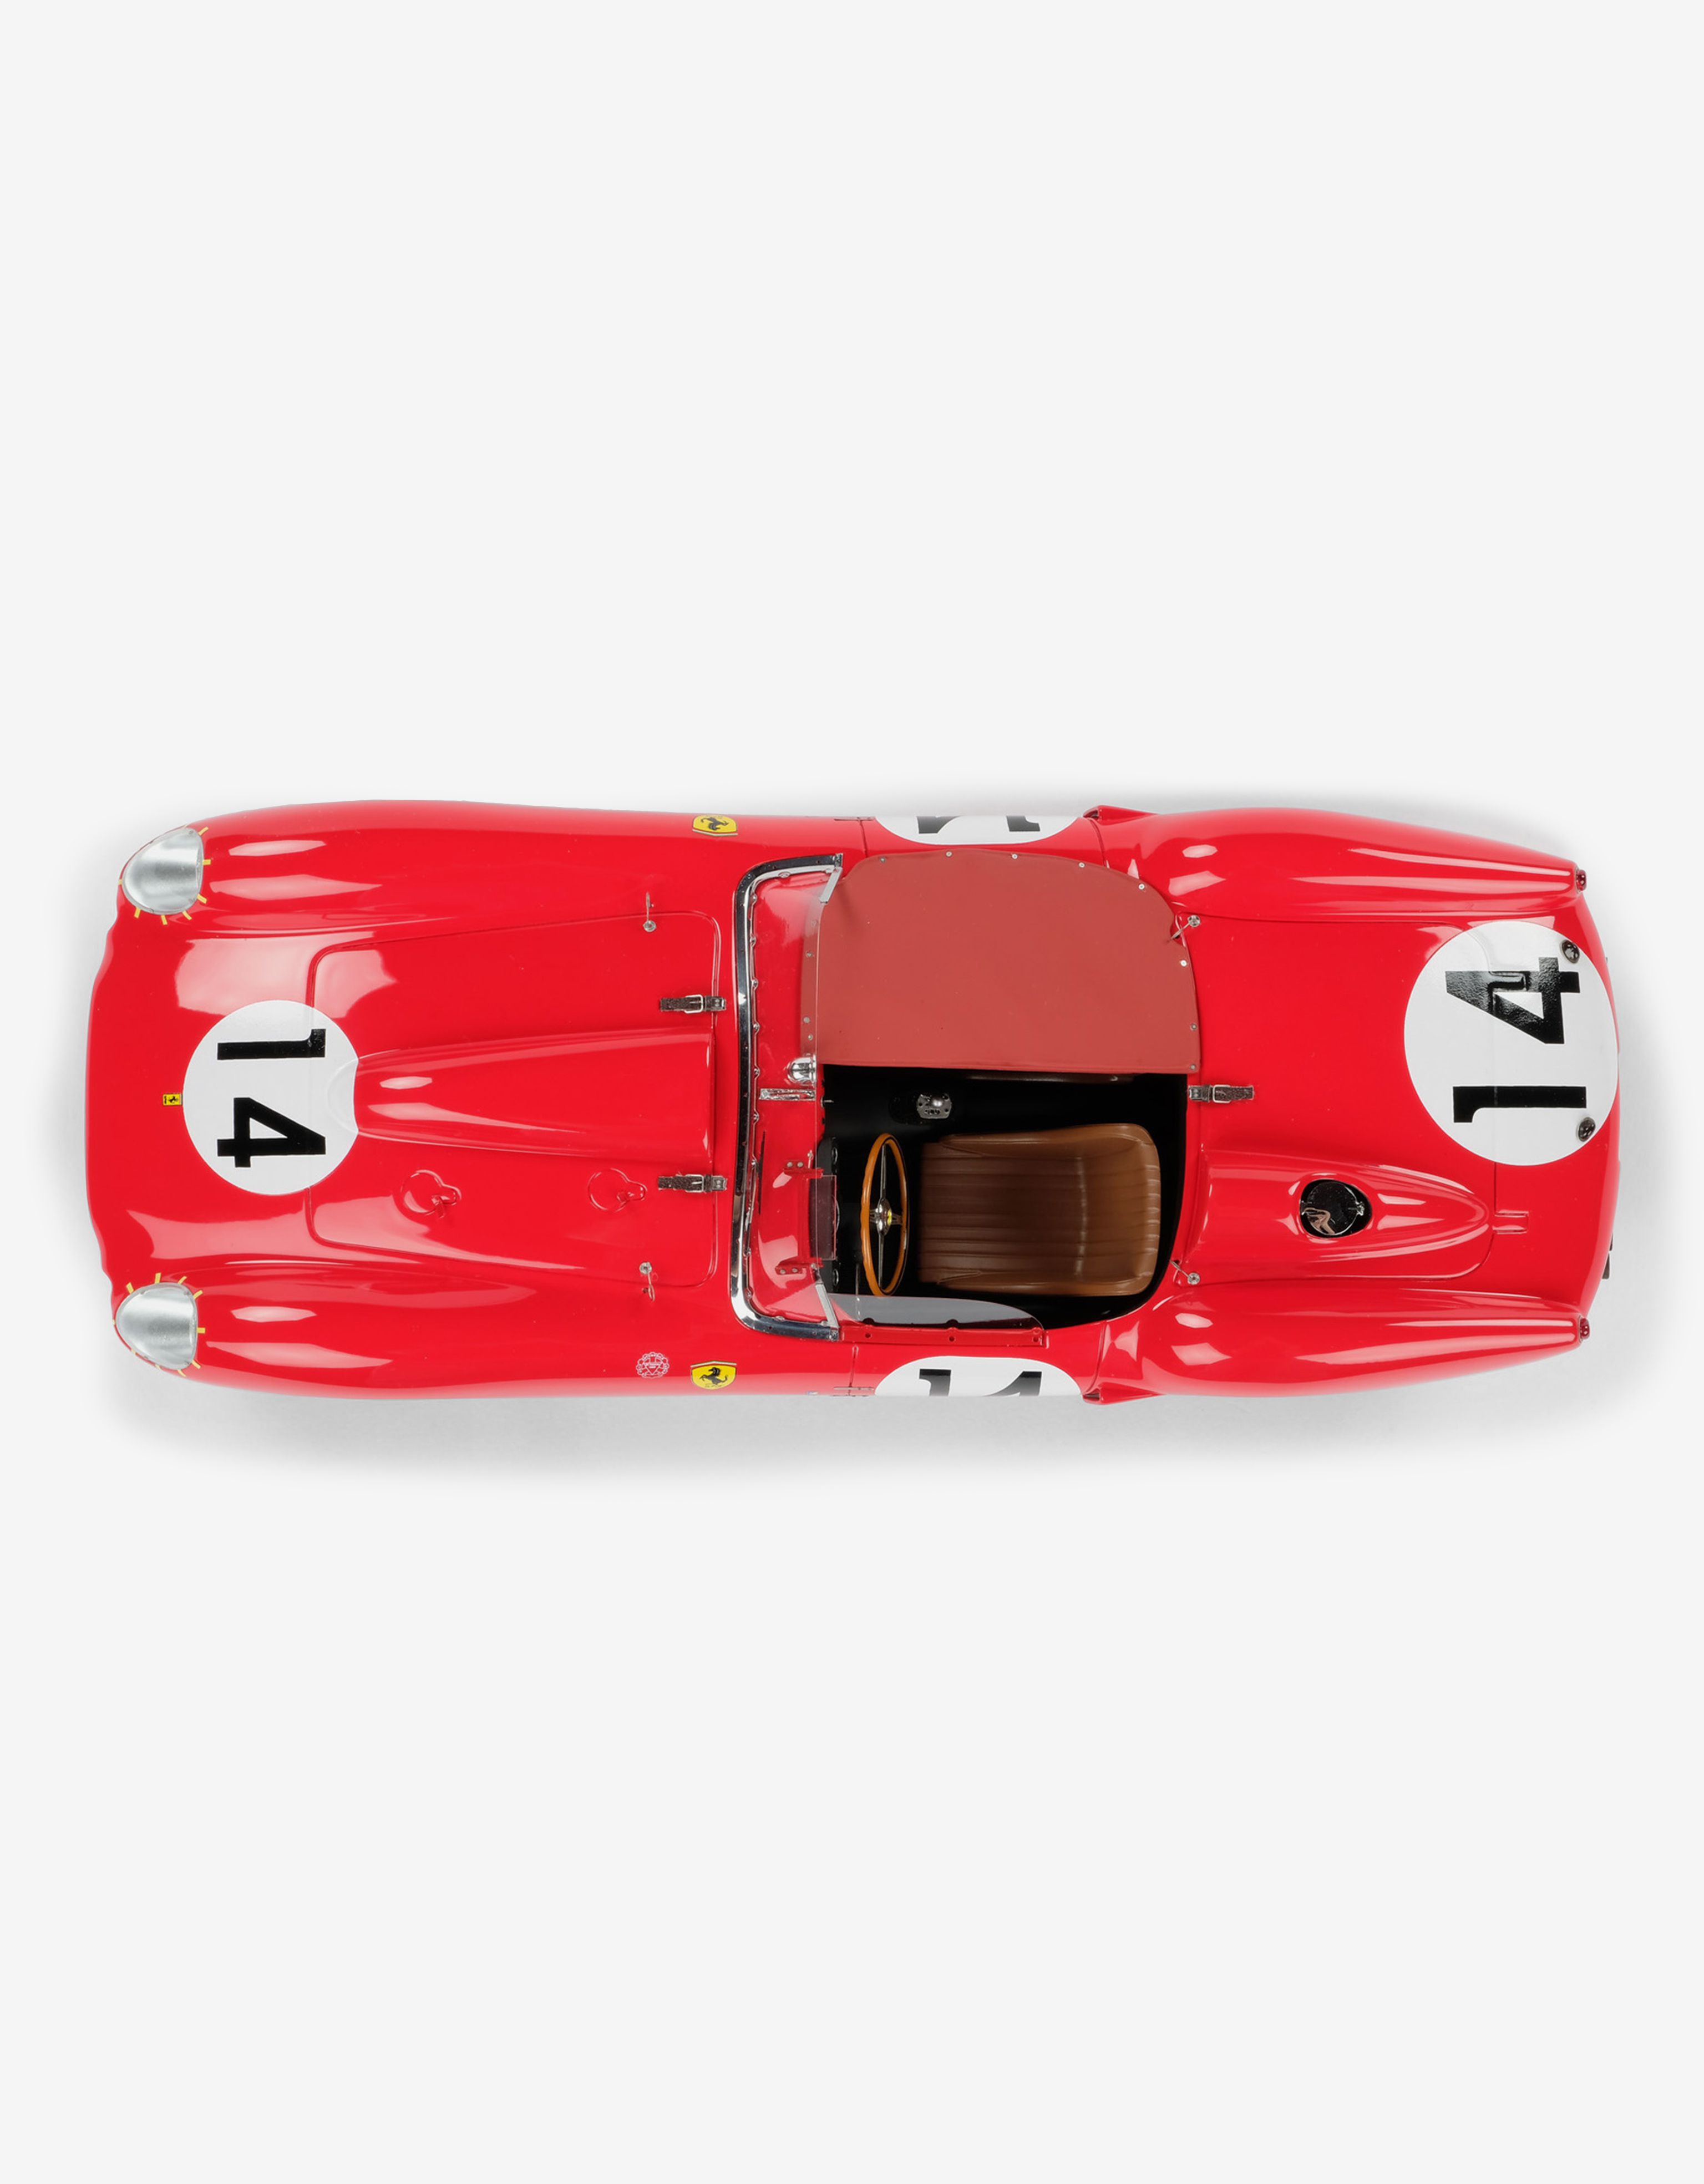 Ferrari Modello Ferrari 250 TR 1958 Le Mans in scala 1:18 Rosso L7580f